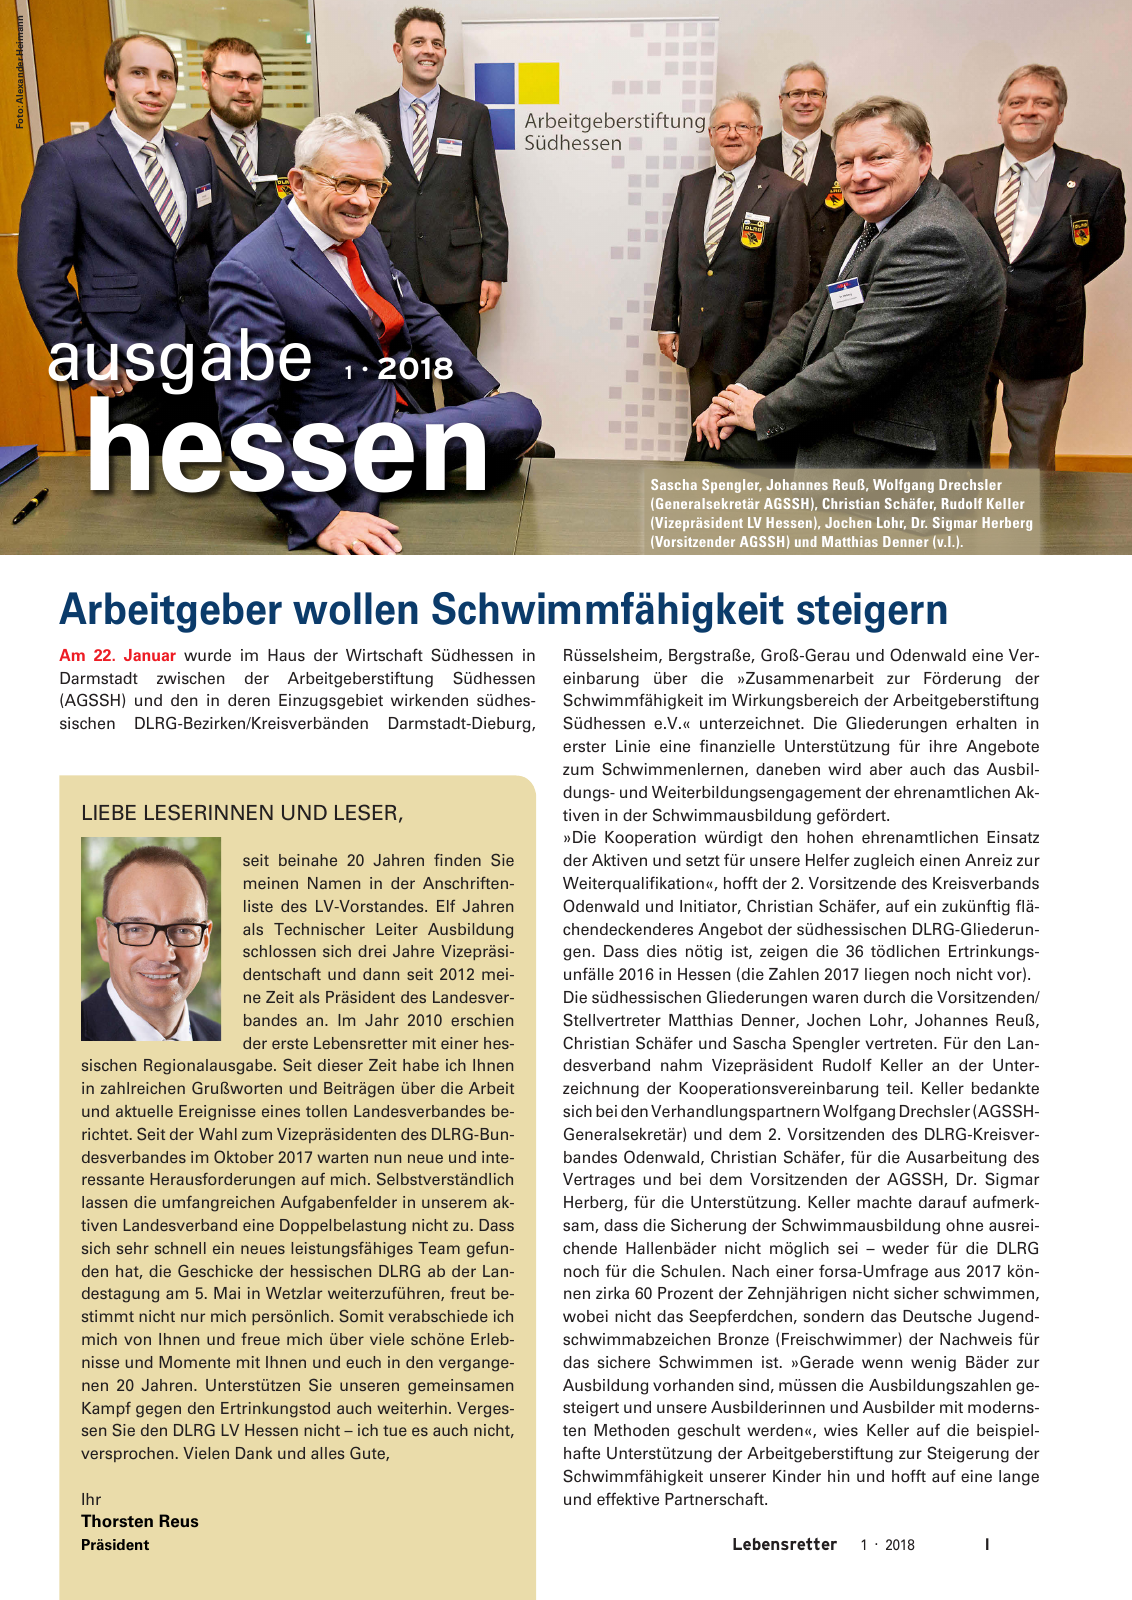 Vorschau Lebensretter 1/2018 - Regionalausgabe Hessen Seite 3